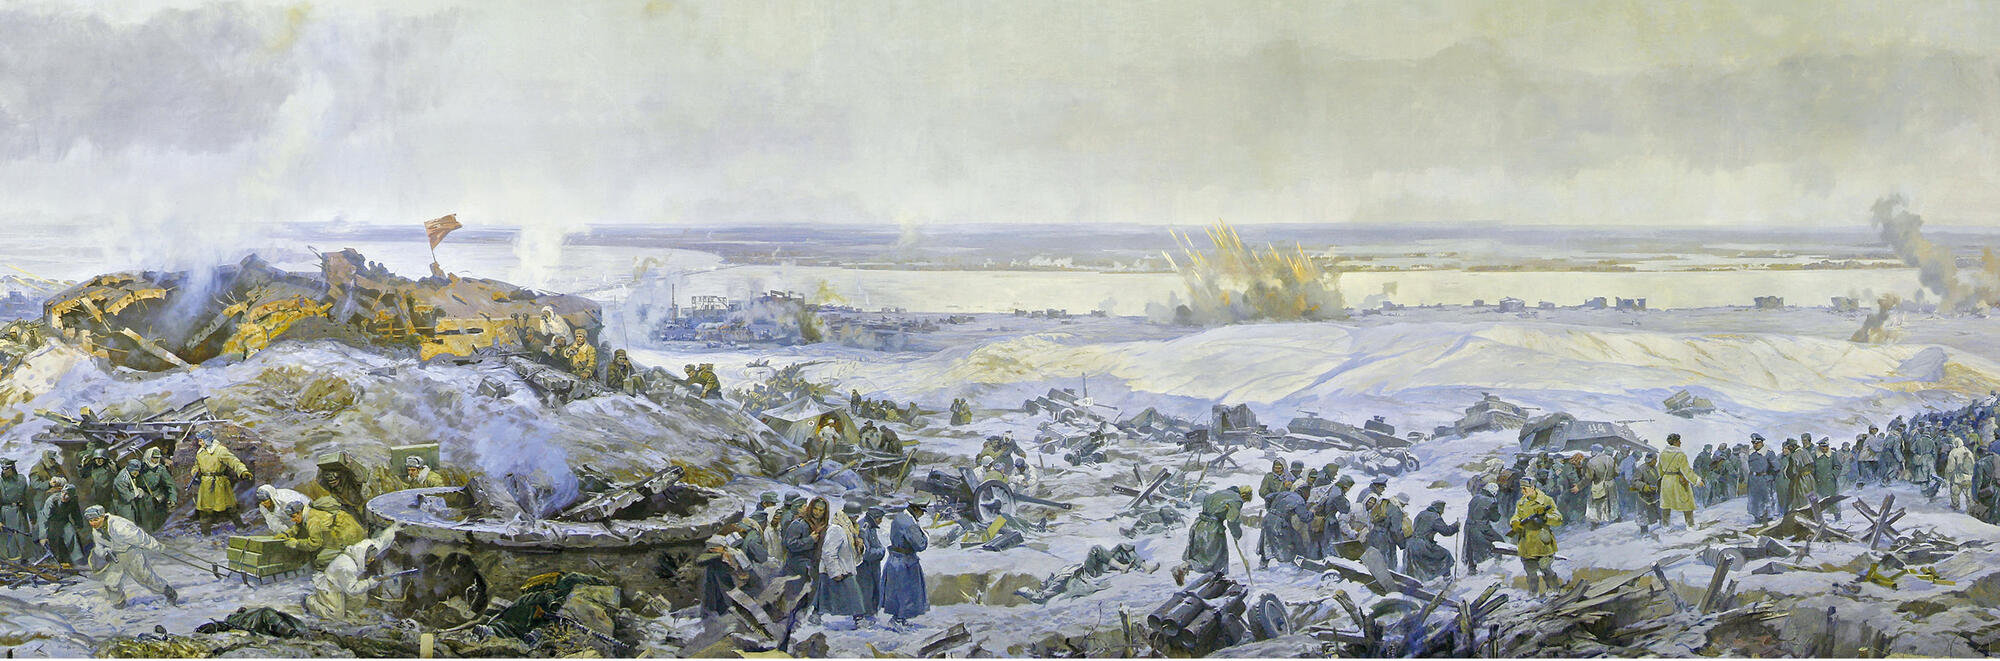 Сталинградская битва картина Дмитриевский